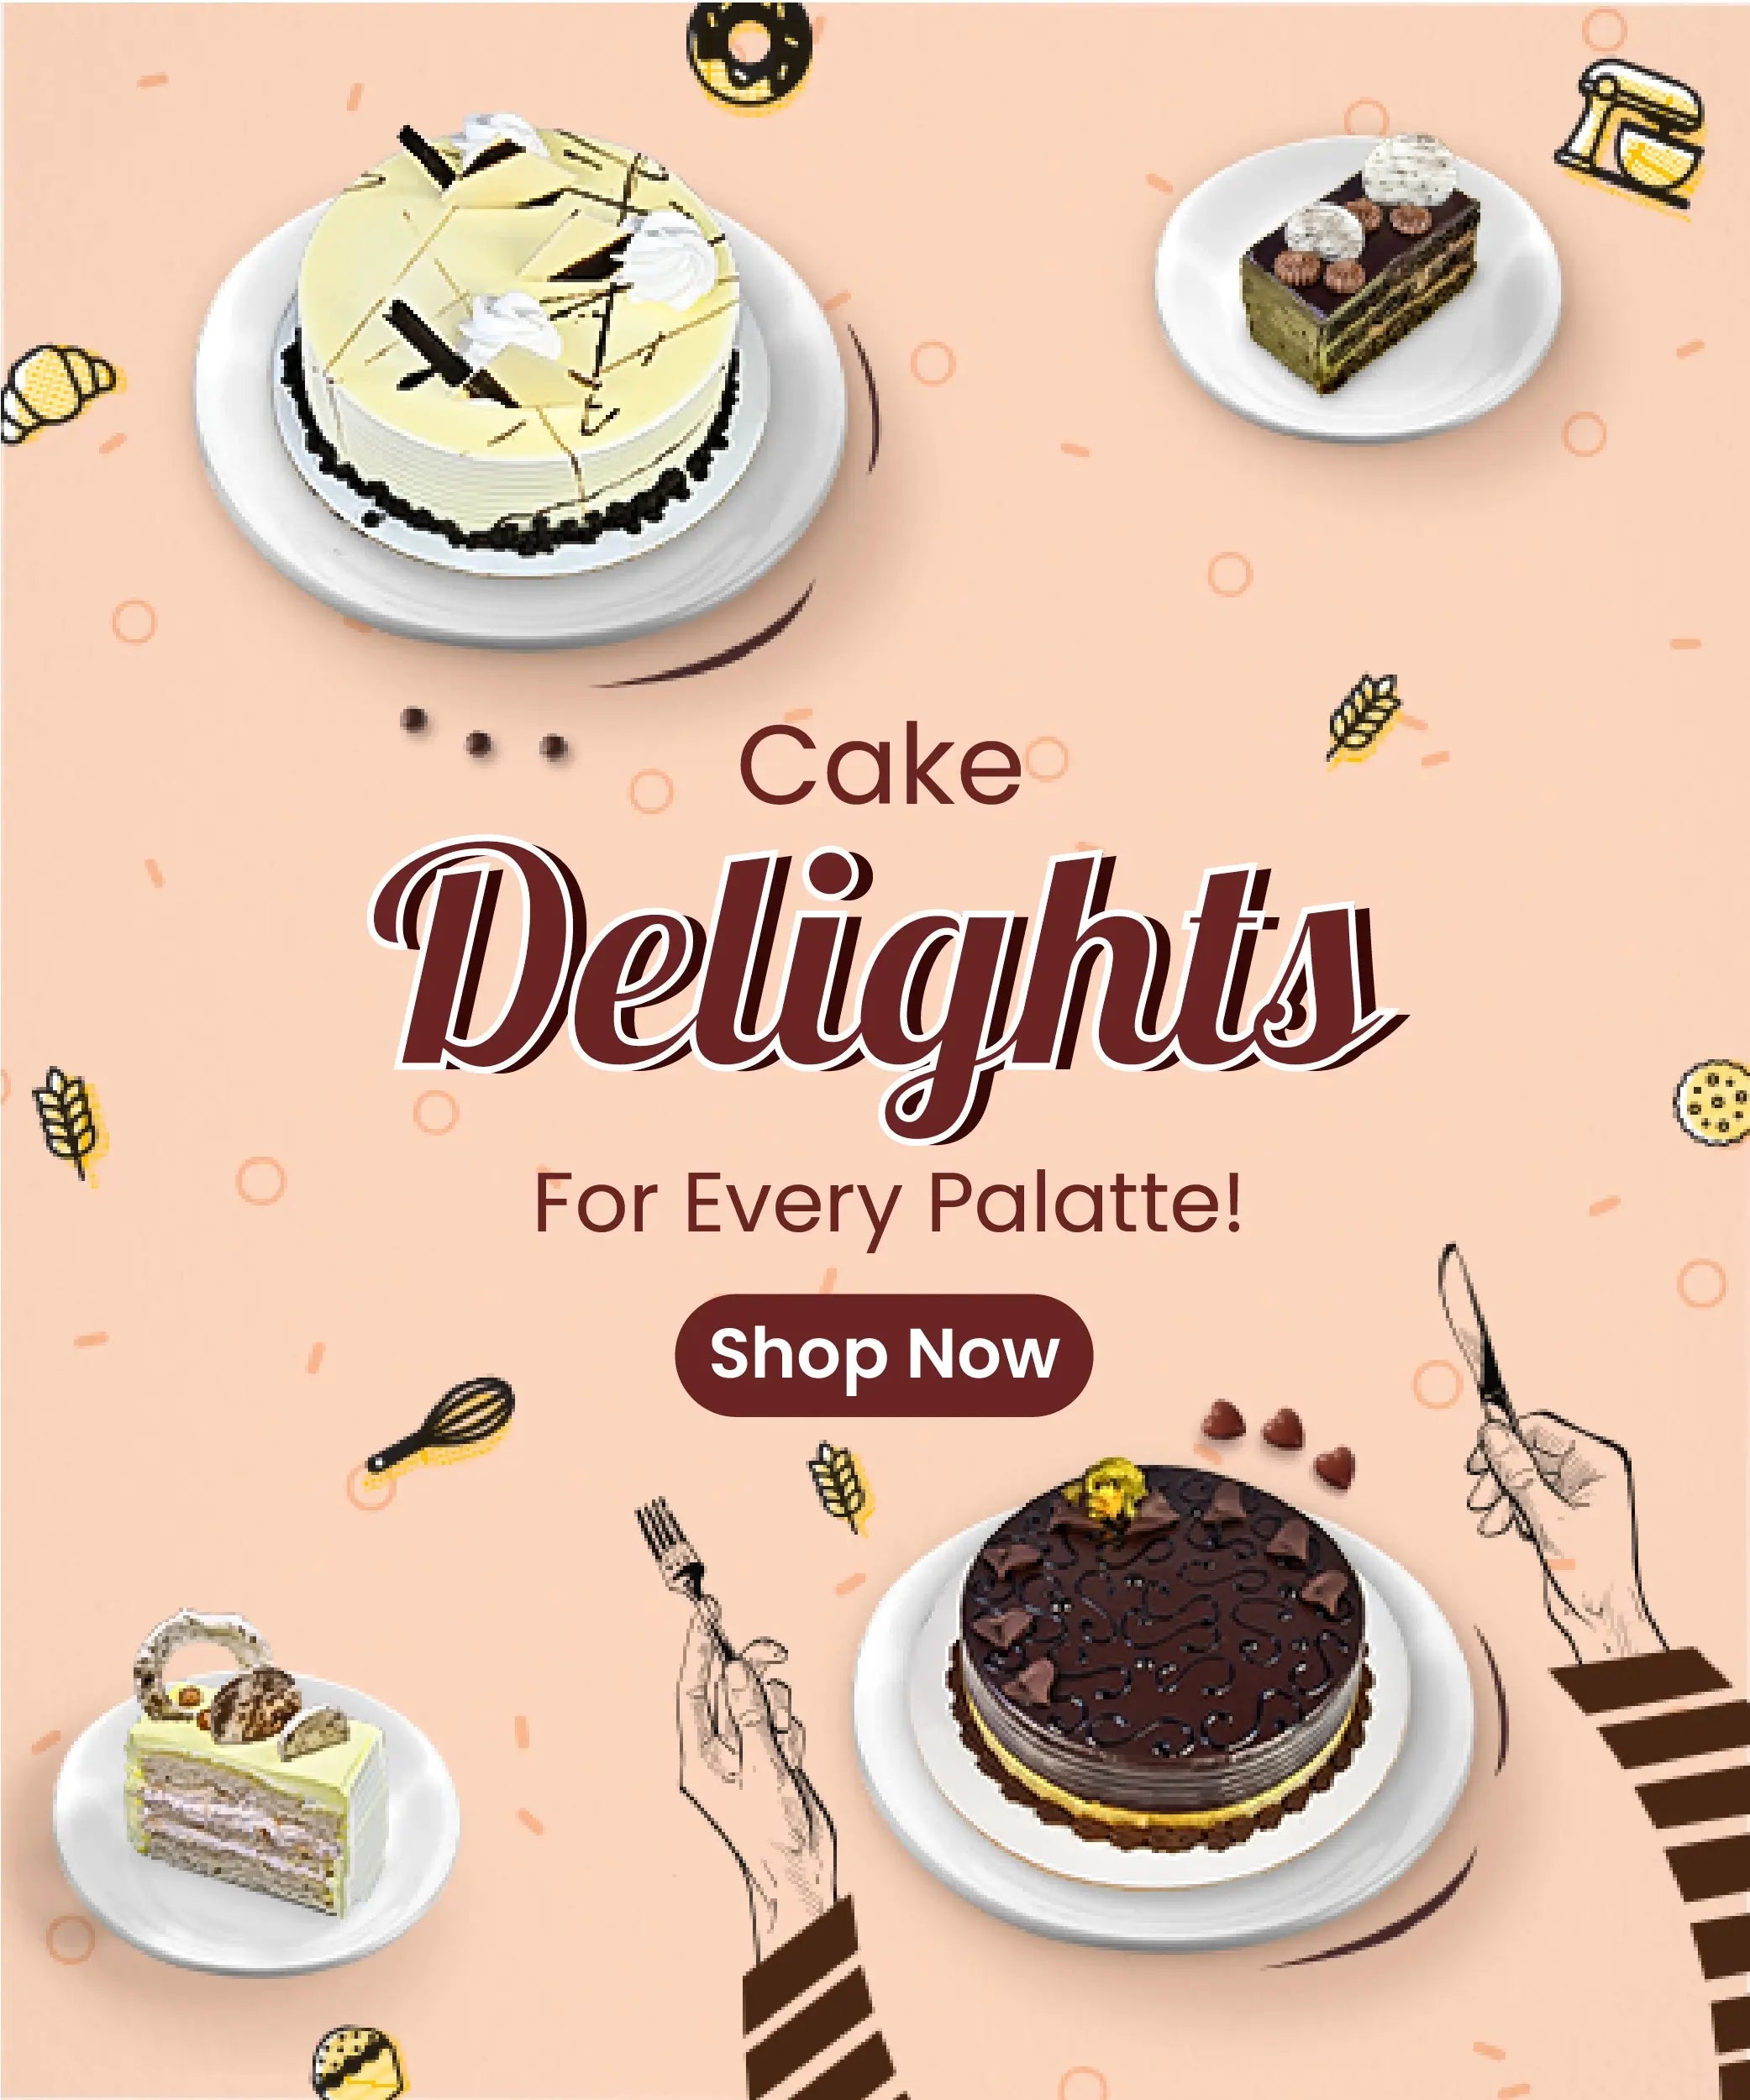 Cake Shop Images  Free Download on Freepik